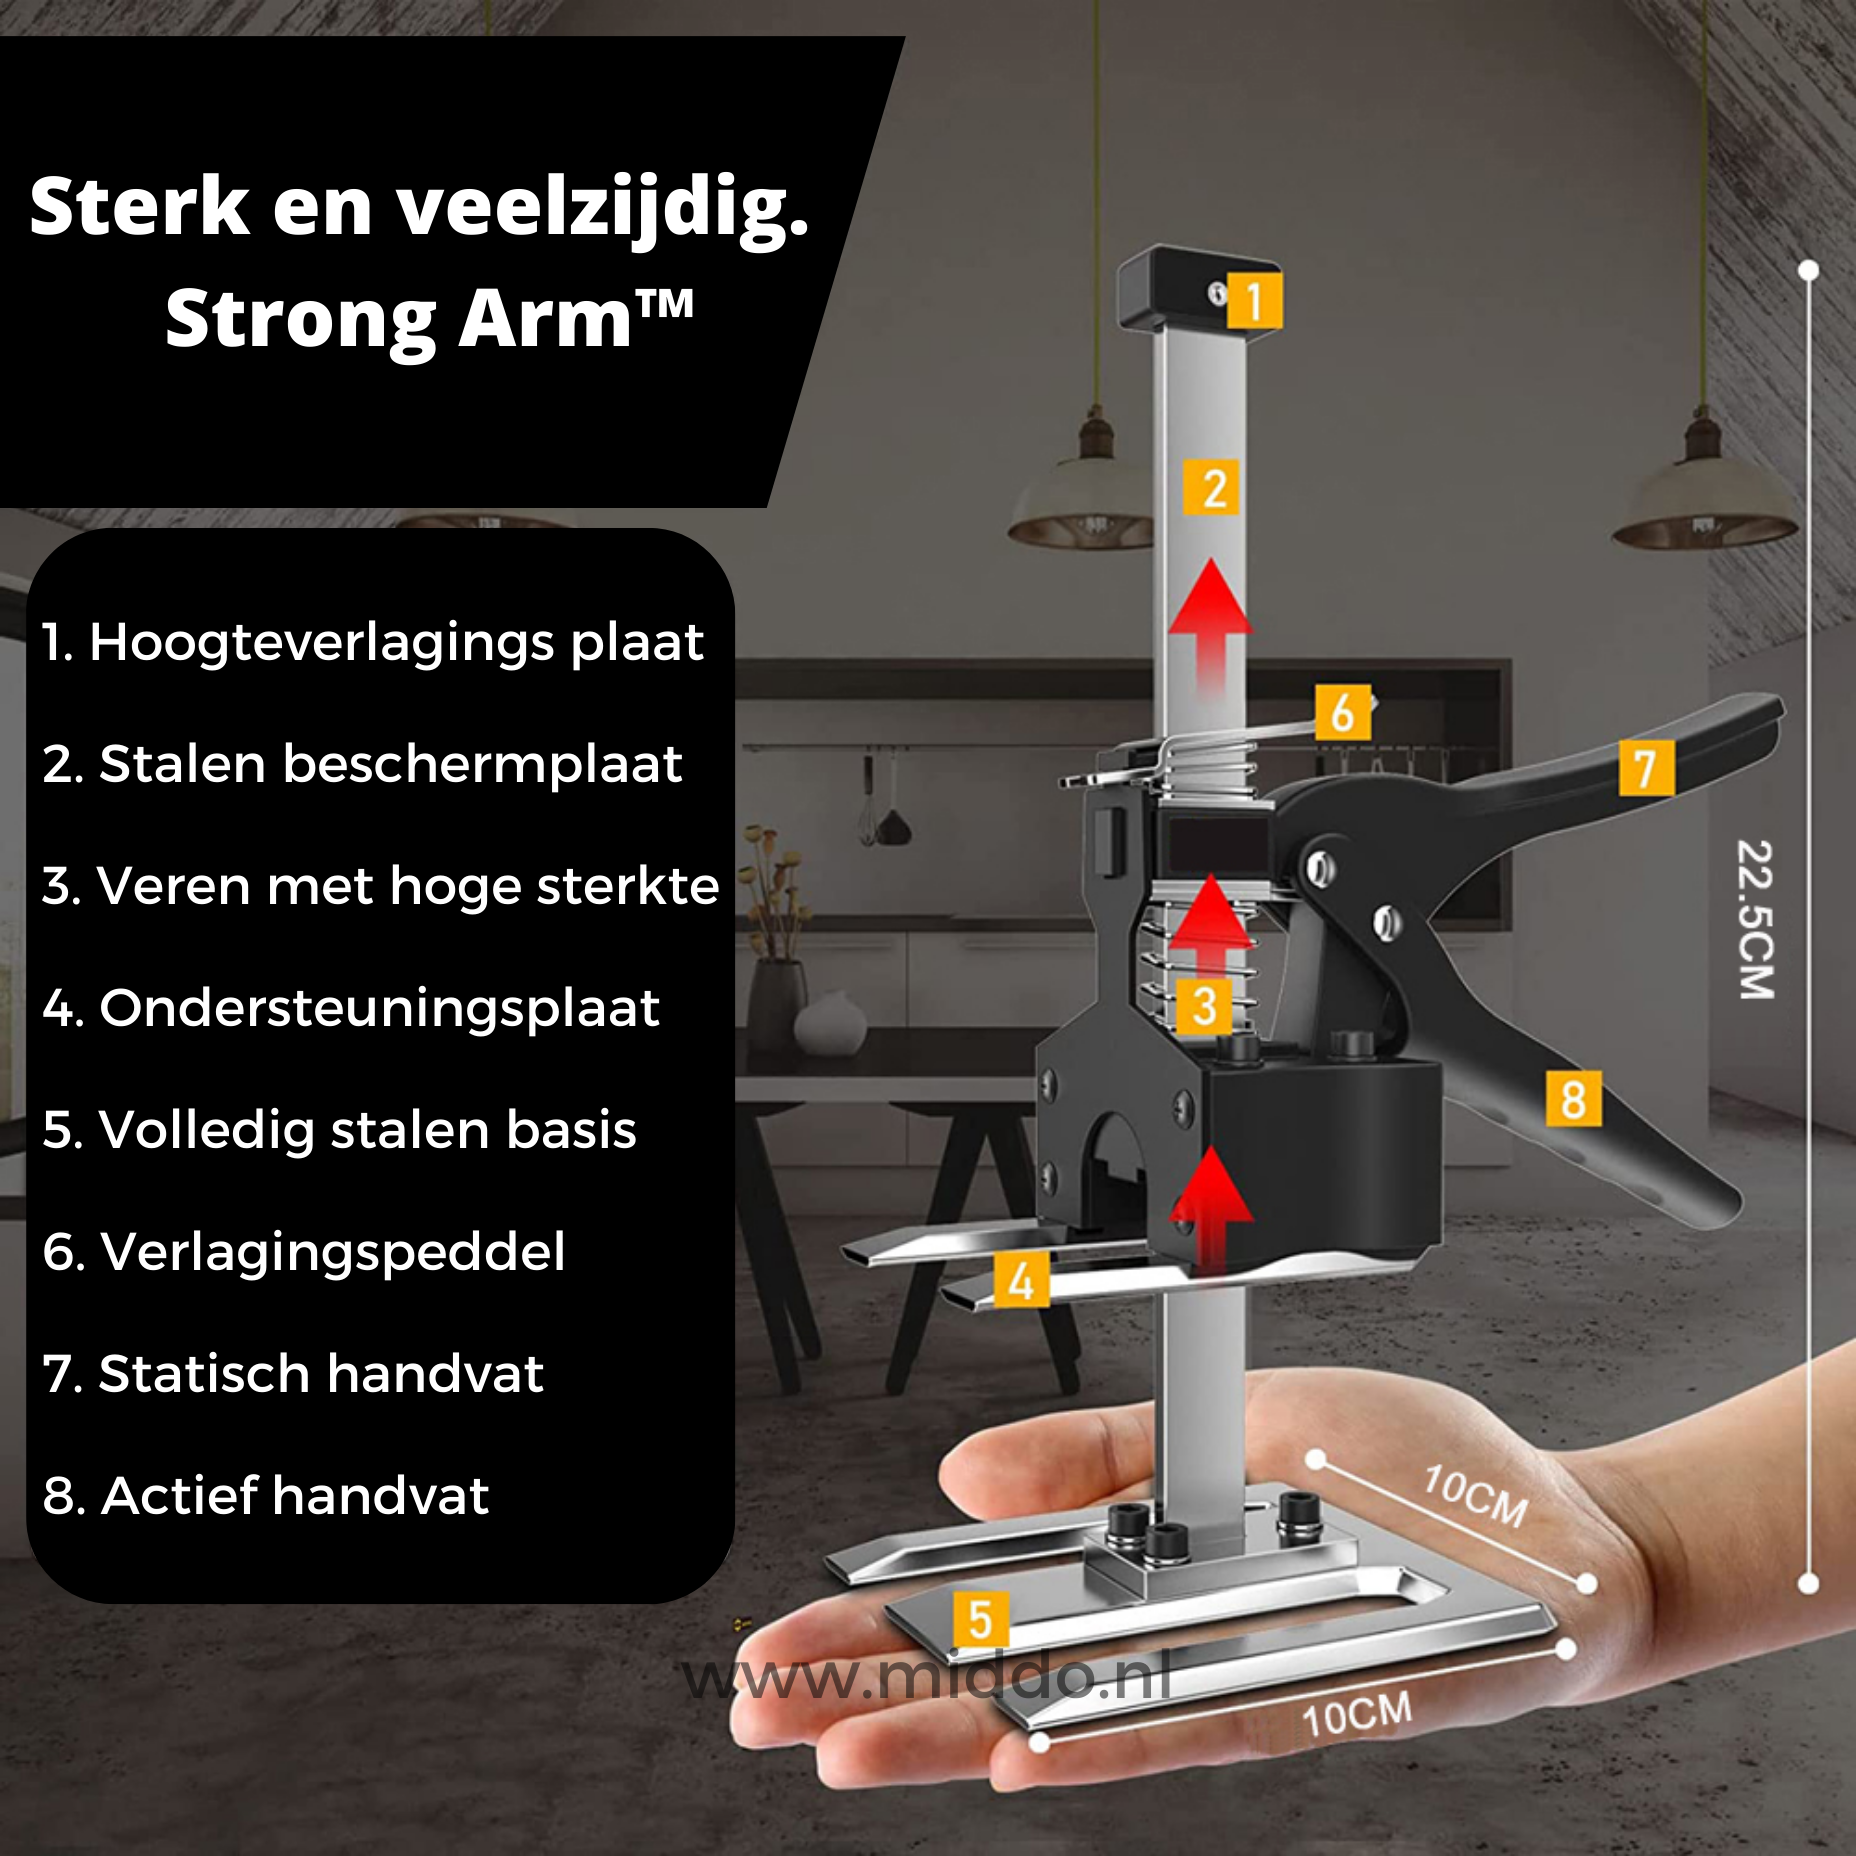 Specificaties en onderdelen van de Strong Arm tilhulp